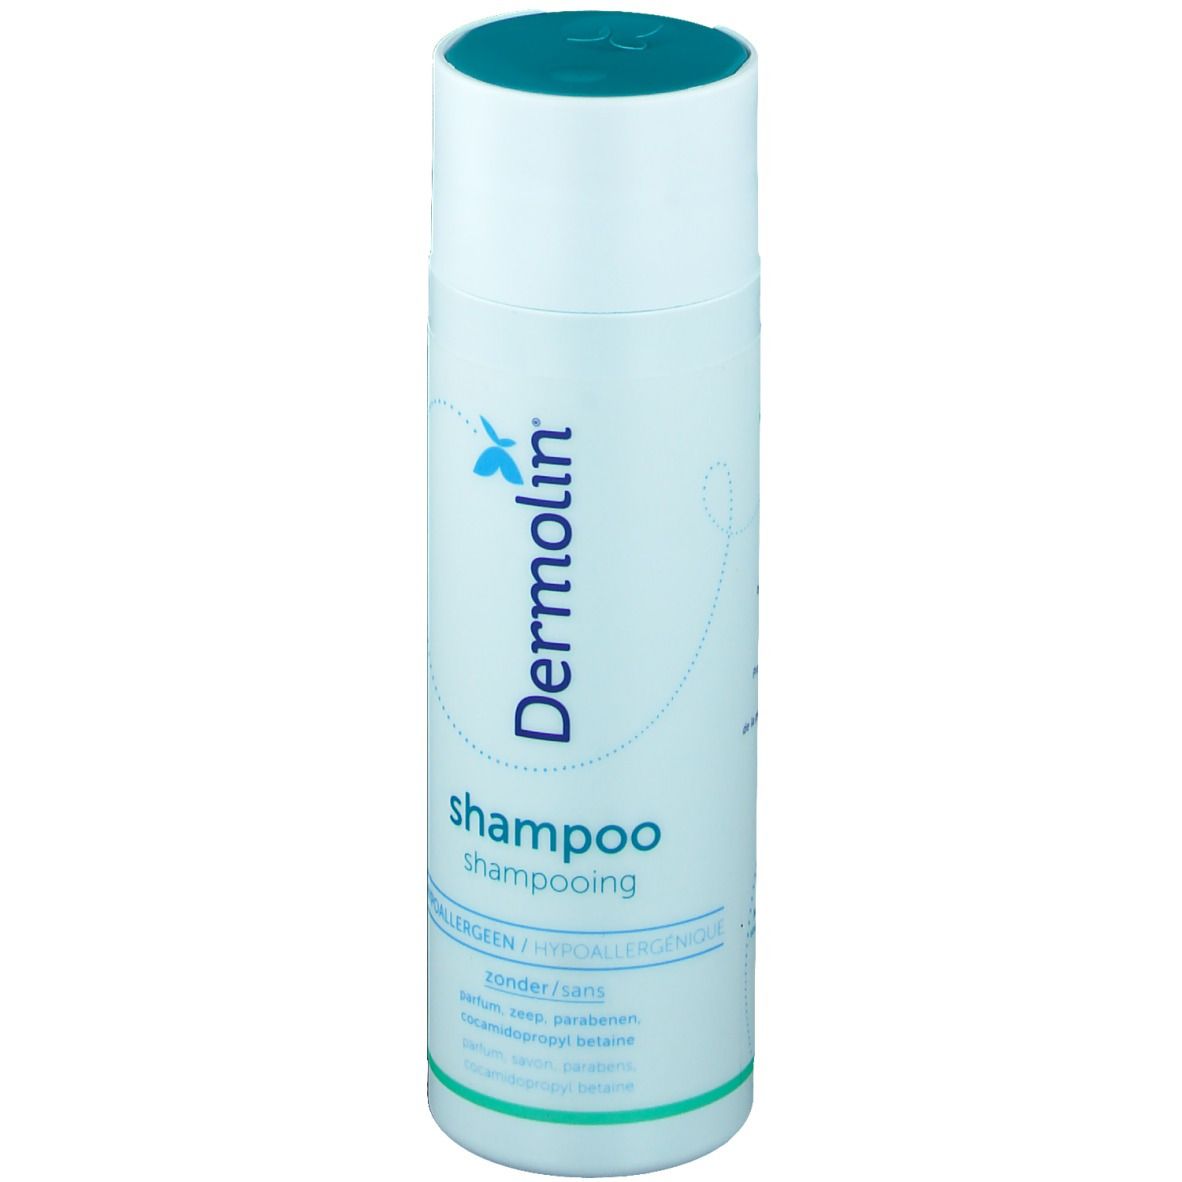 Dermolin Shampoo Gel